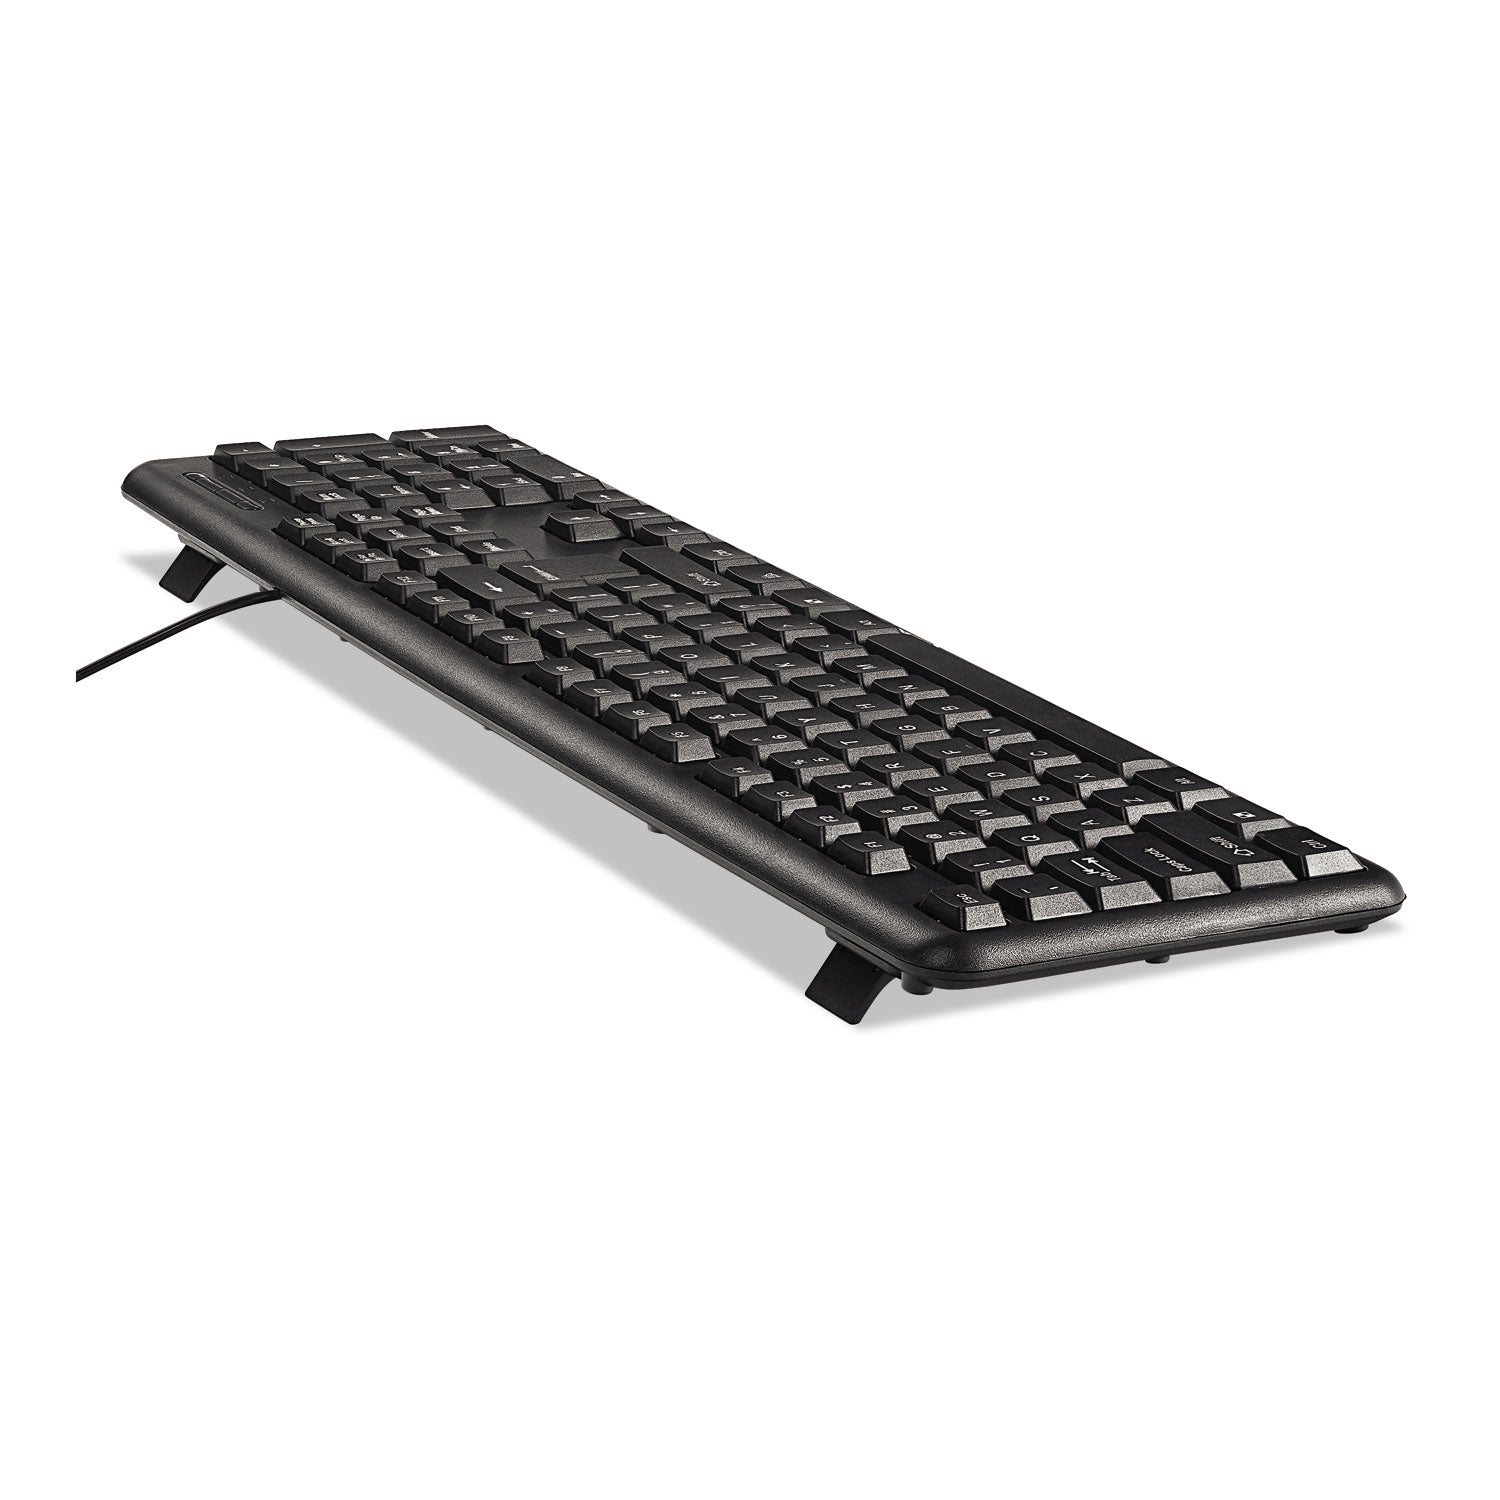 slimline-keyboard-and-mouse-usb-20-black_ivr69202 - 6